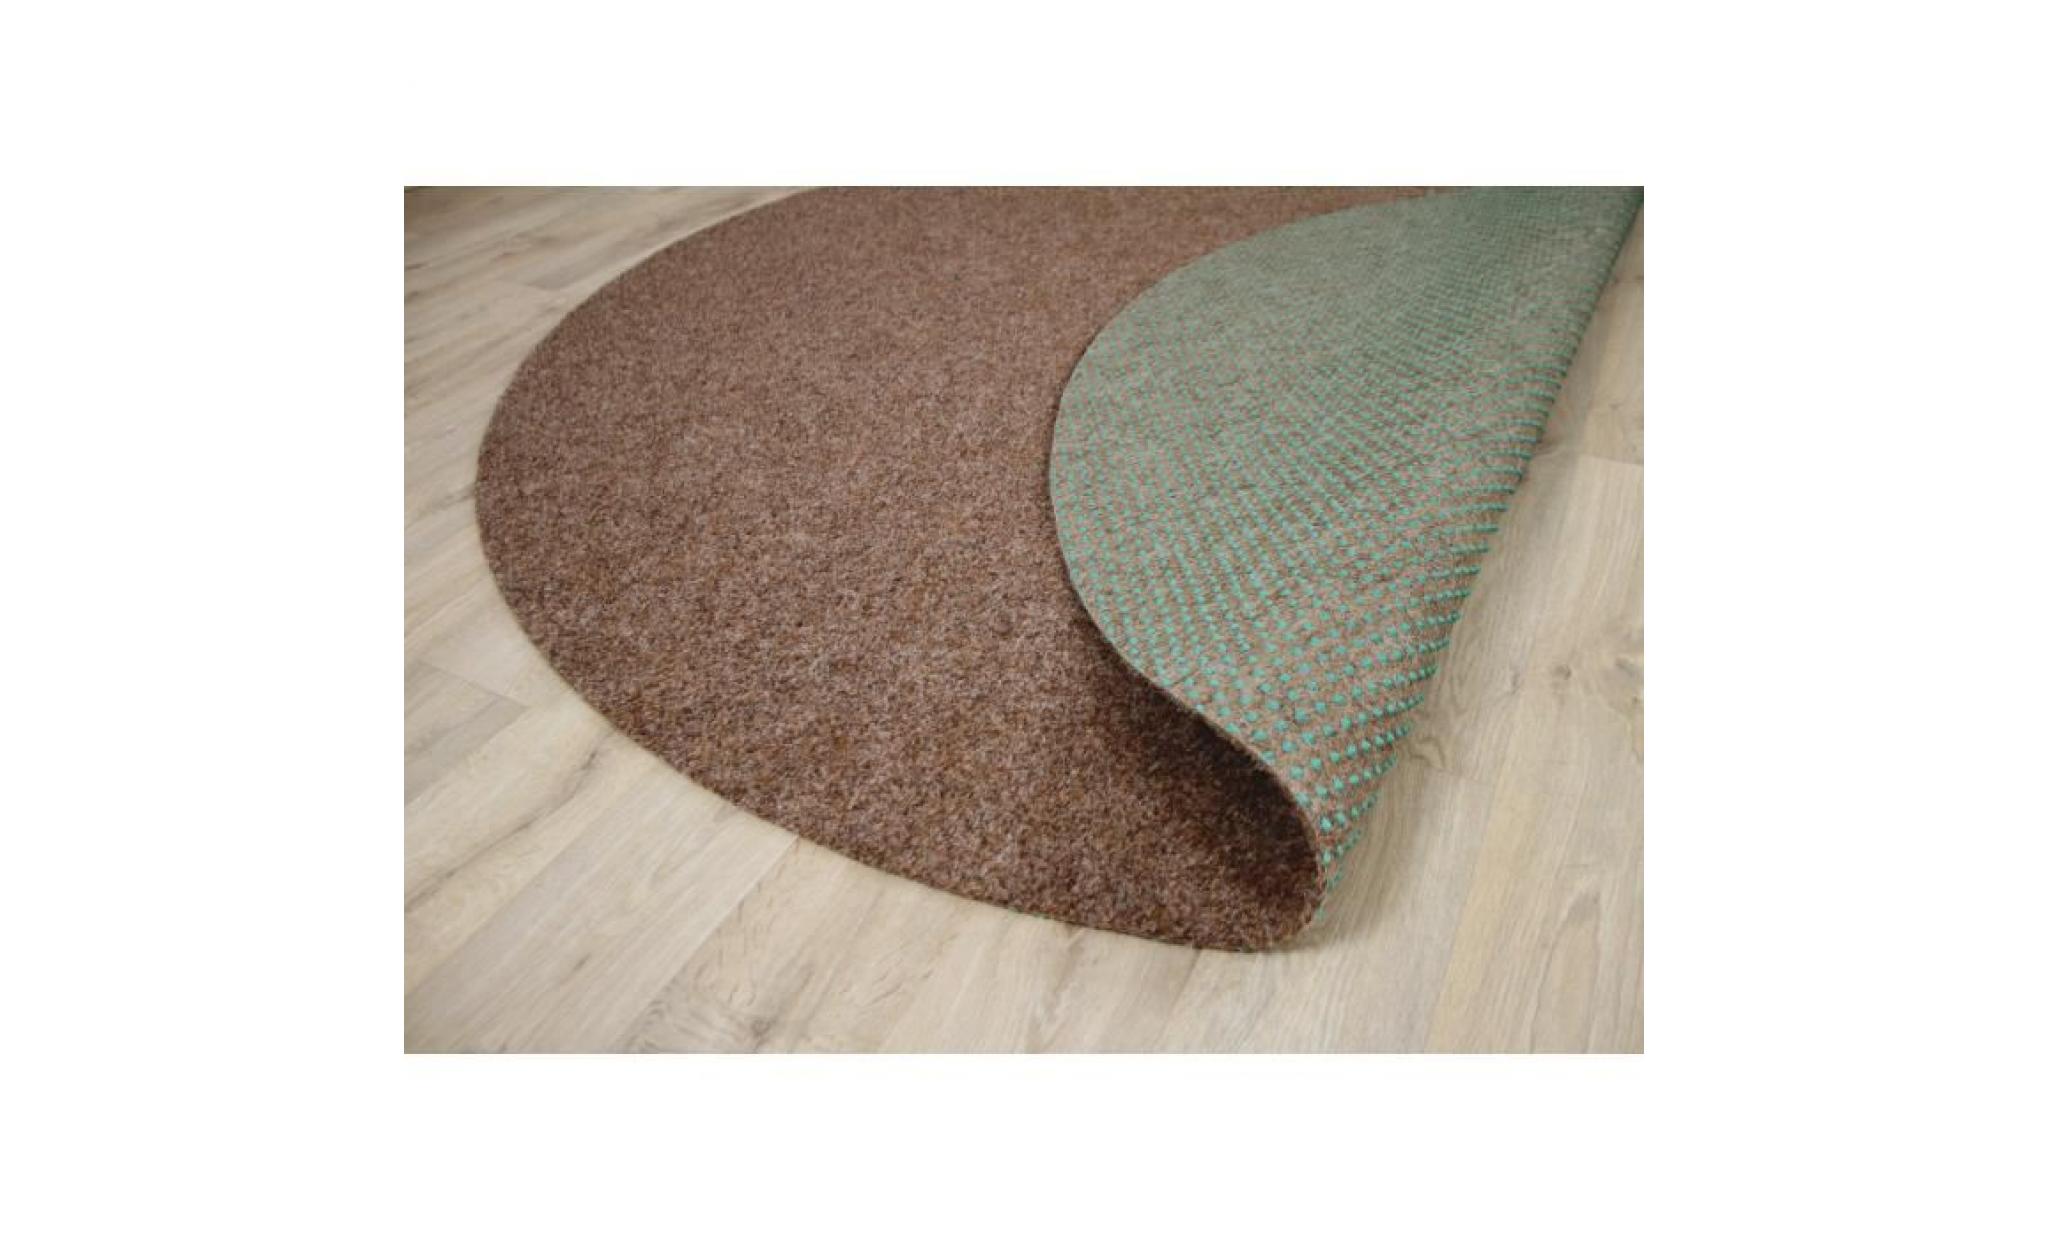 kingston   tapis type gazon artificiel rond – pour jardin, terrasse, balcon   beige   13 tailles disponibles [133 cm rond] pas cher